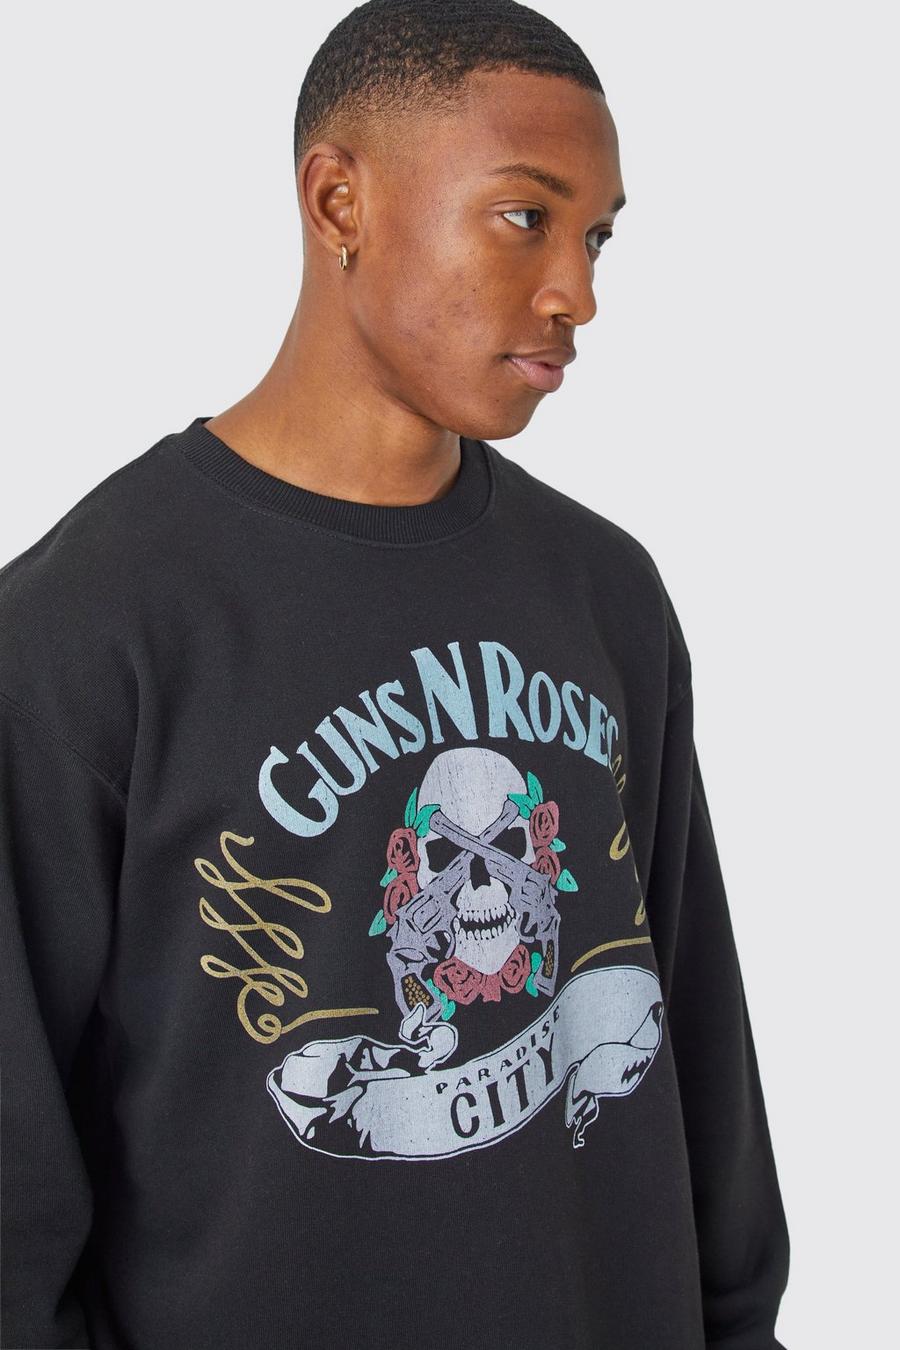 Biden Oversized Guns N Roses Skull City License Sweatshirt